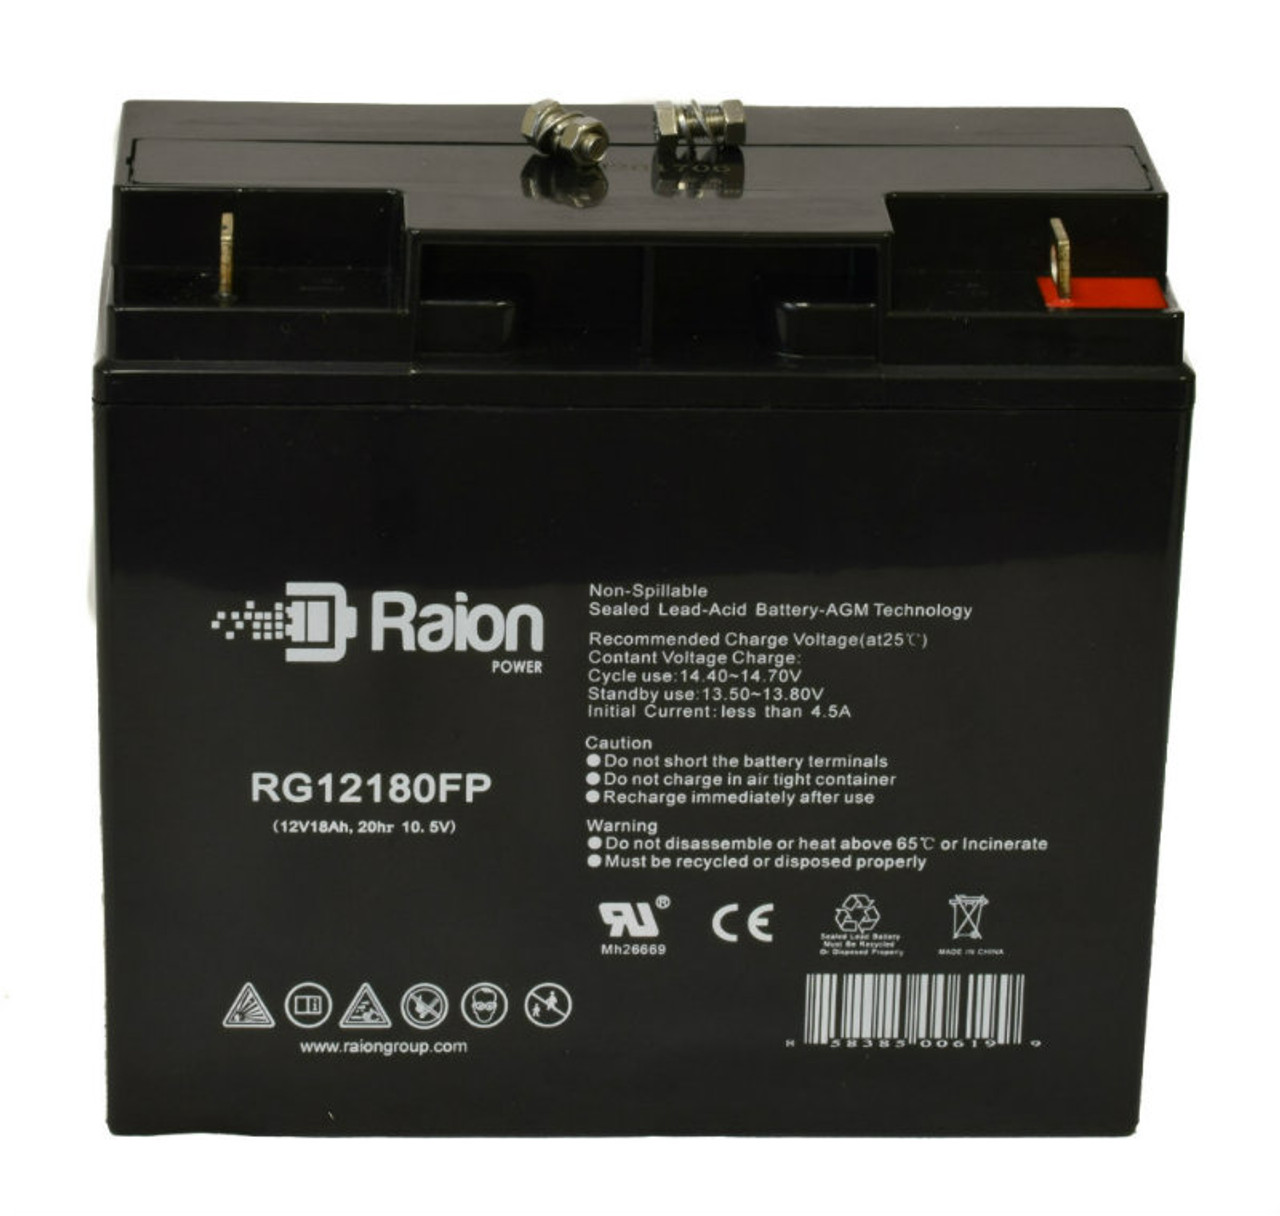 Raion Power RG12180FP 12V 18Ah Lead Acid Battery for EWheels EW-85 Jellybean Collection